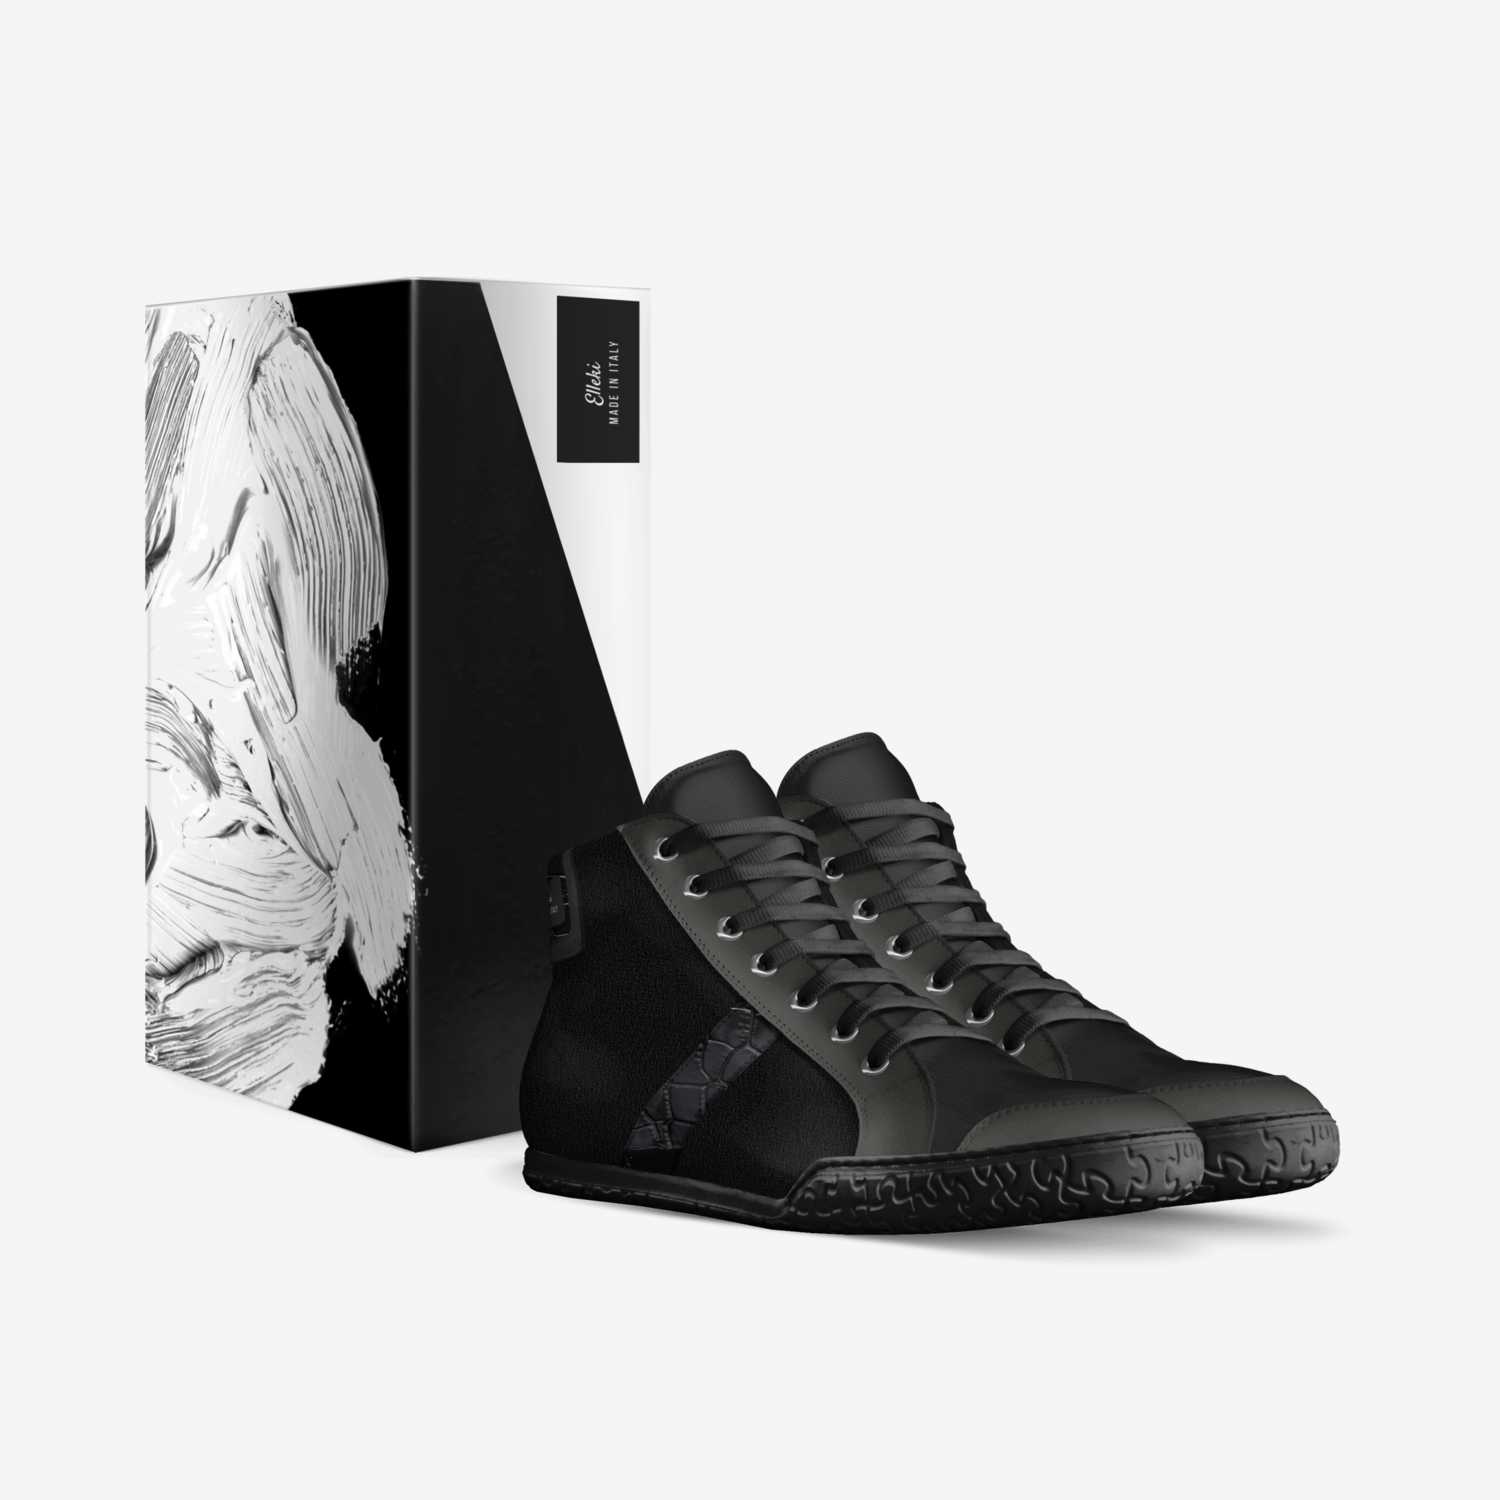 Elleki  custom made in Italy shoes by Deon Watkins | Box view